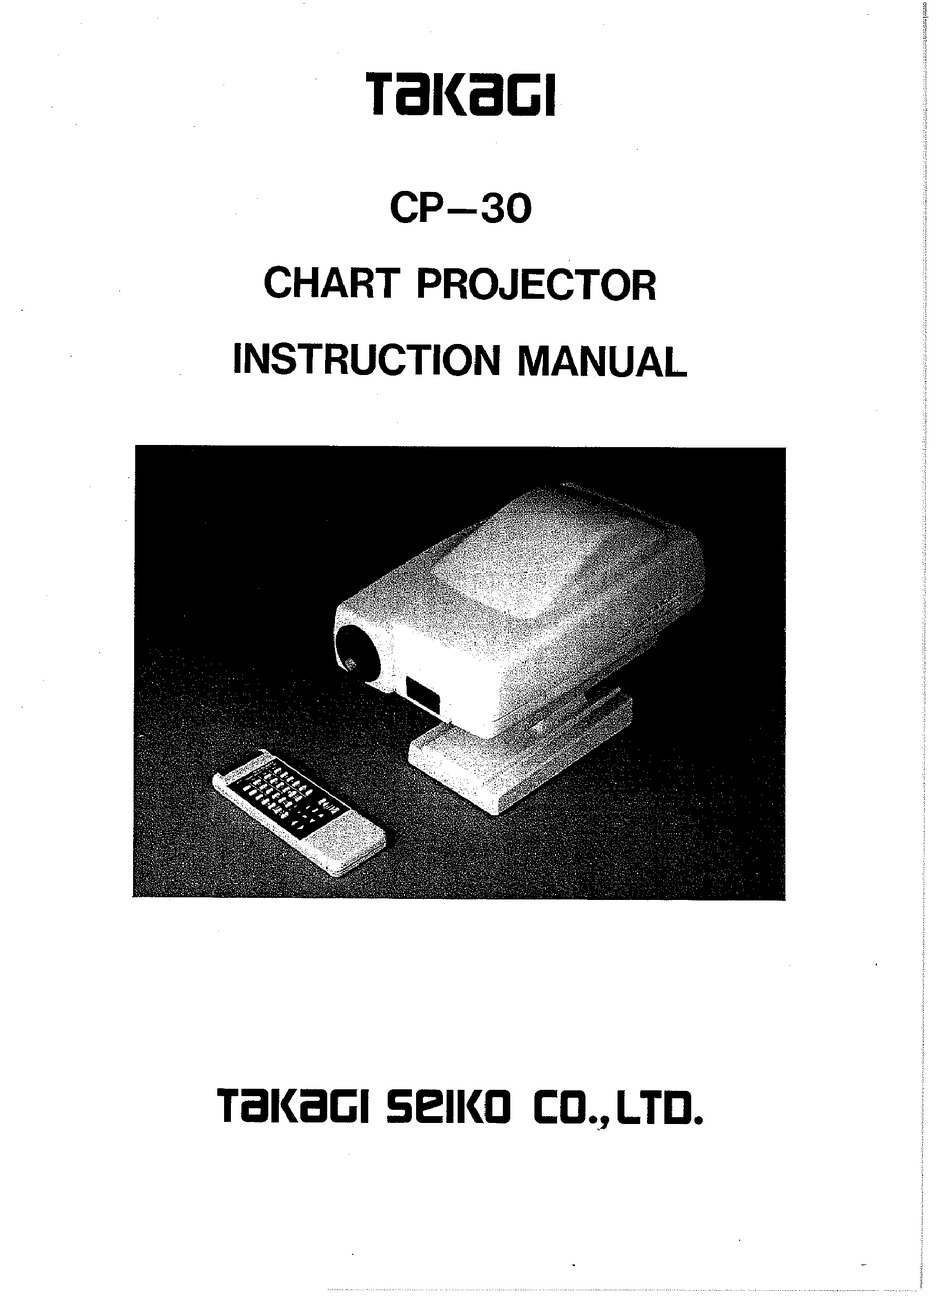 TAKAGI CP-30 INSTRUCTION MANUAL Pdf Download | ManualsLib